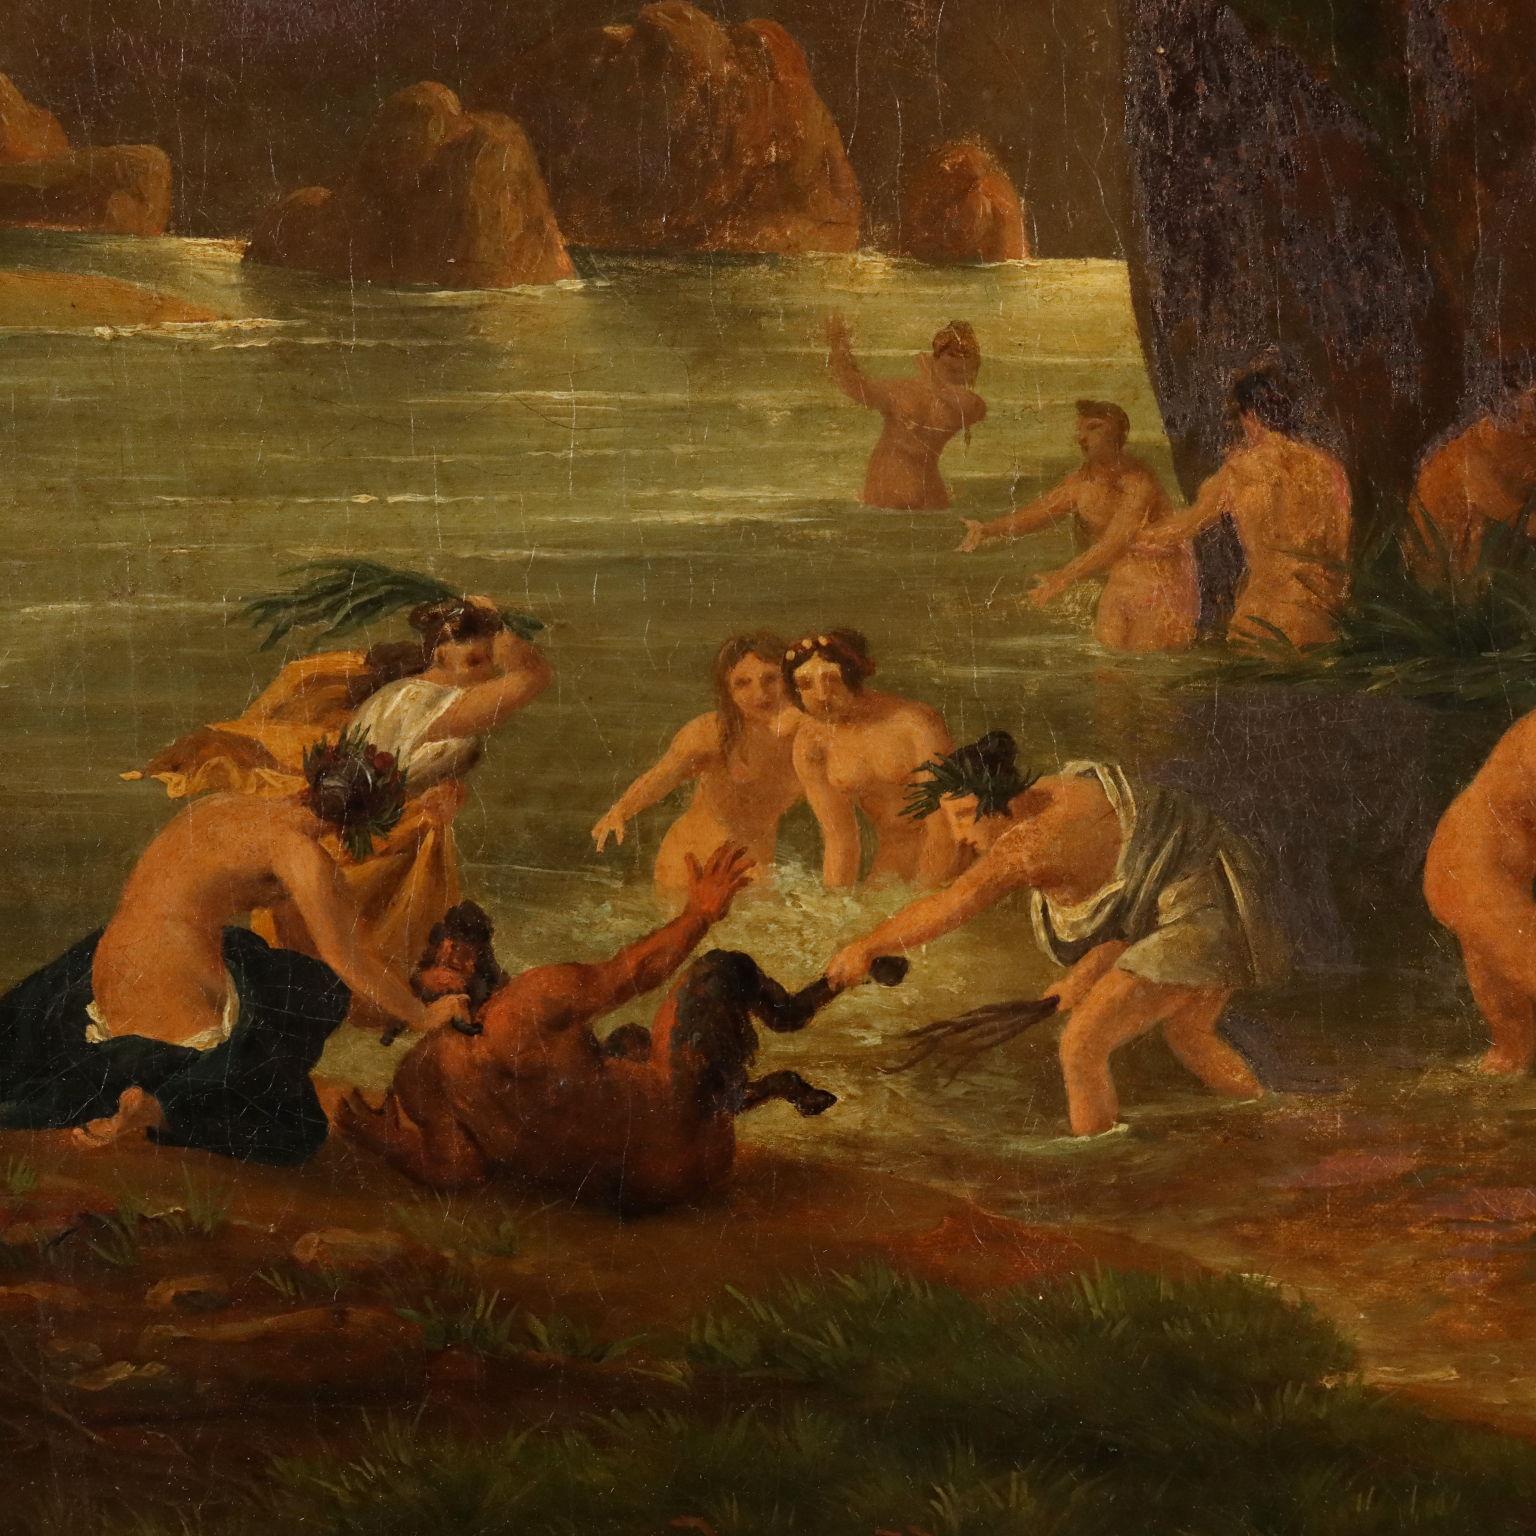 Dipinto con Scena di Ninfe e Satiri al Bagno XIX secolo - Other Art Style Painting by Unknown